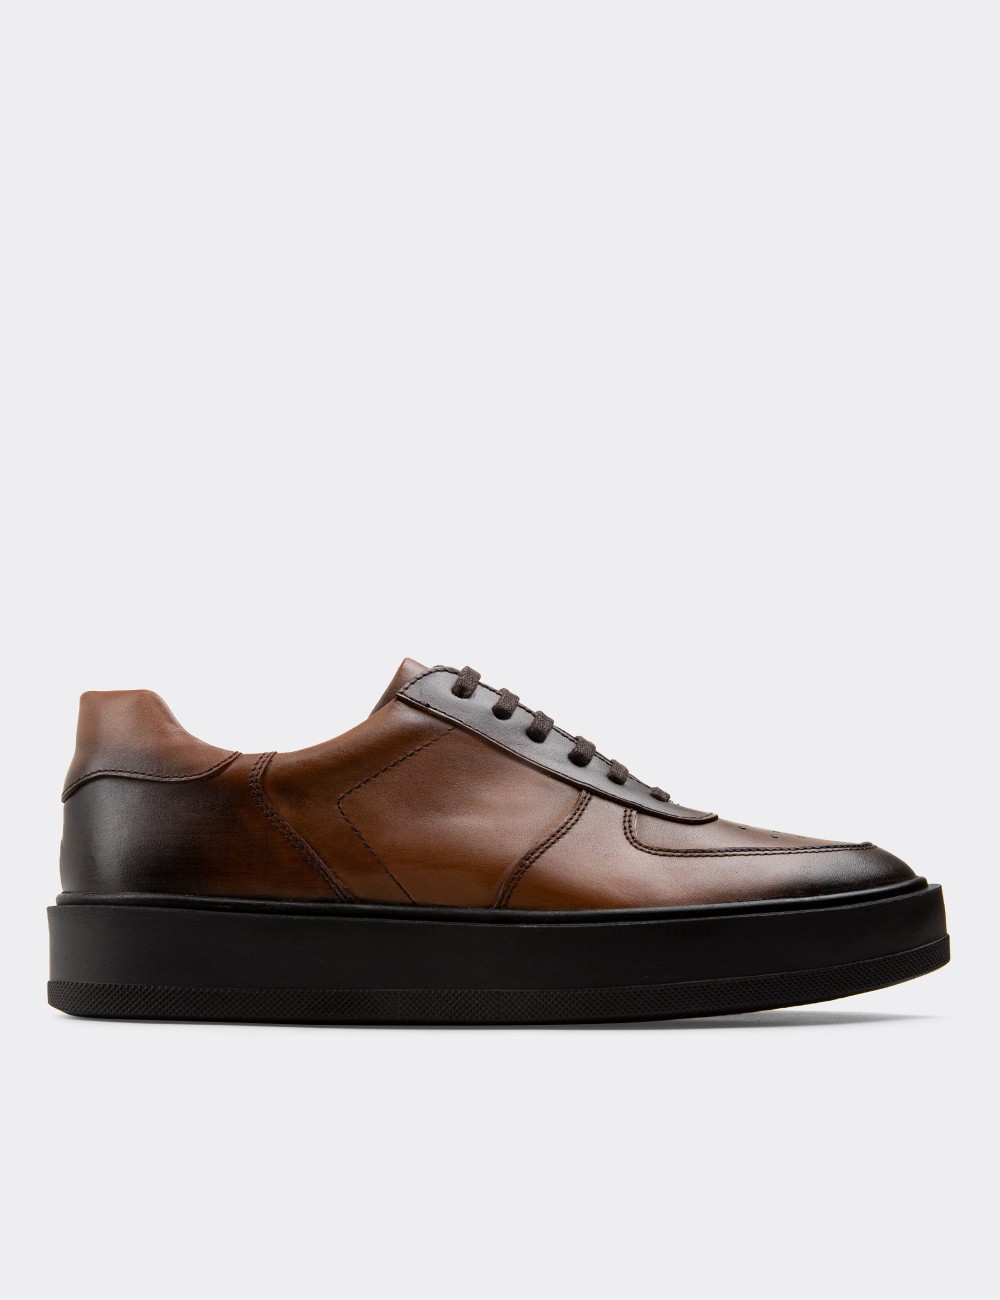 Tan  Leather Sneakers - 01880MTBAP01